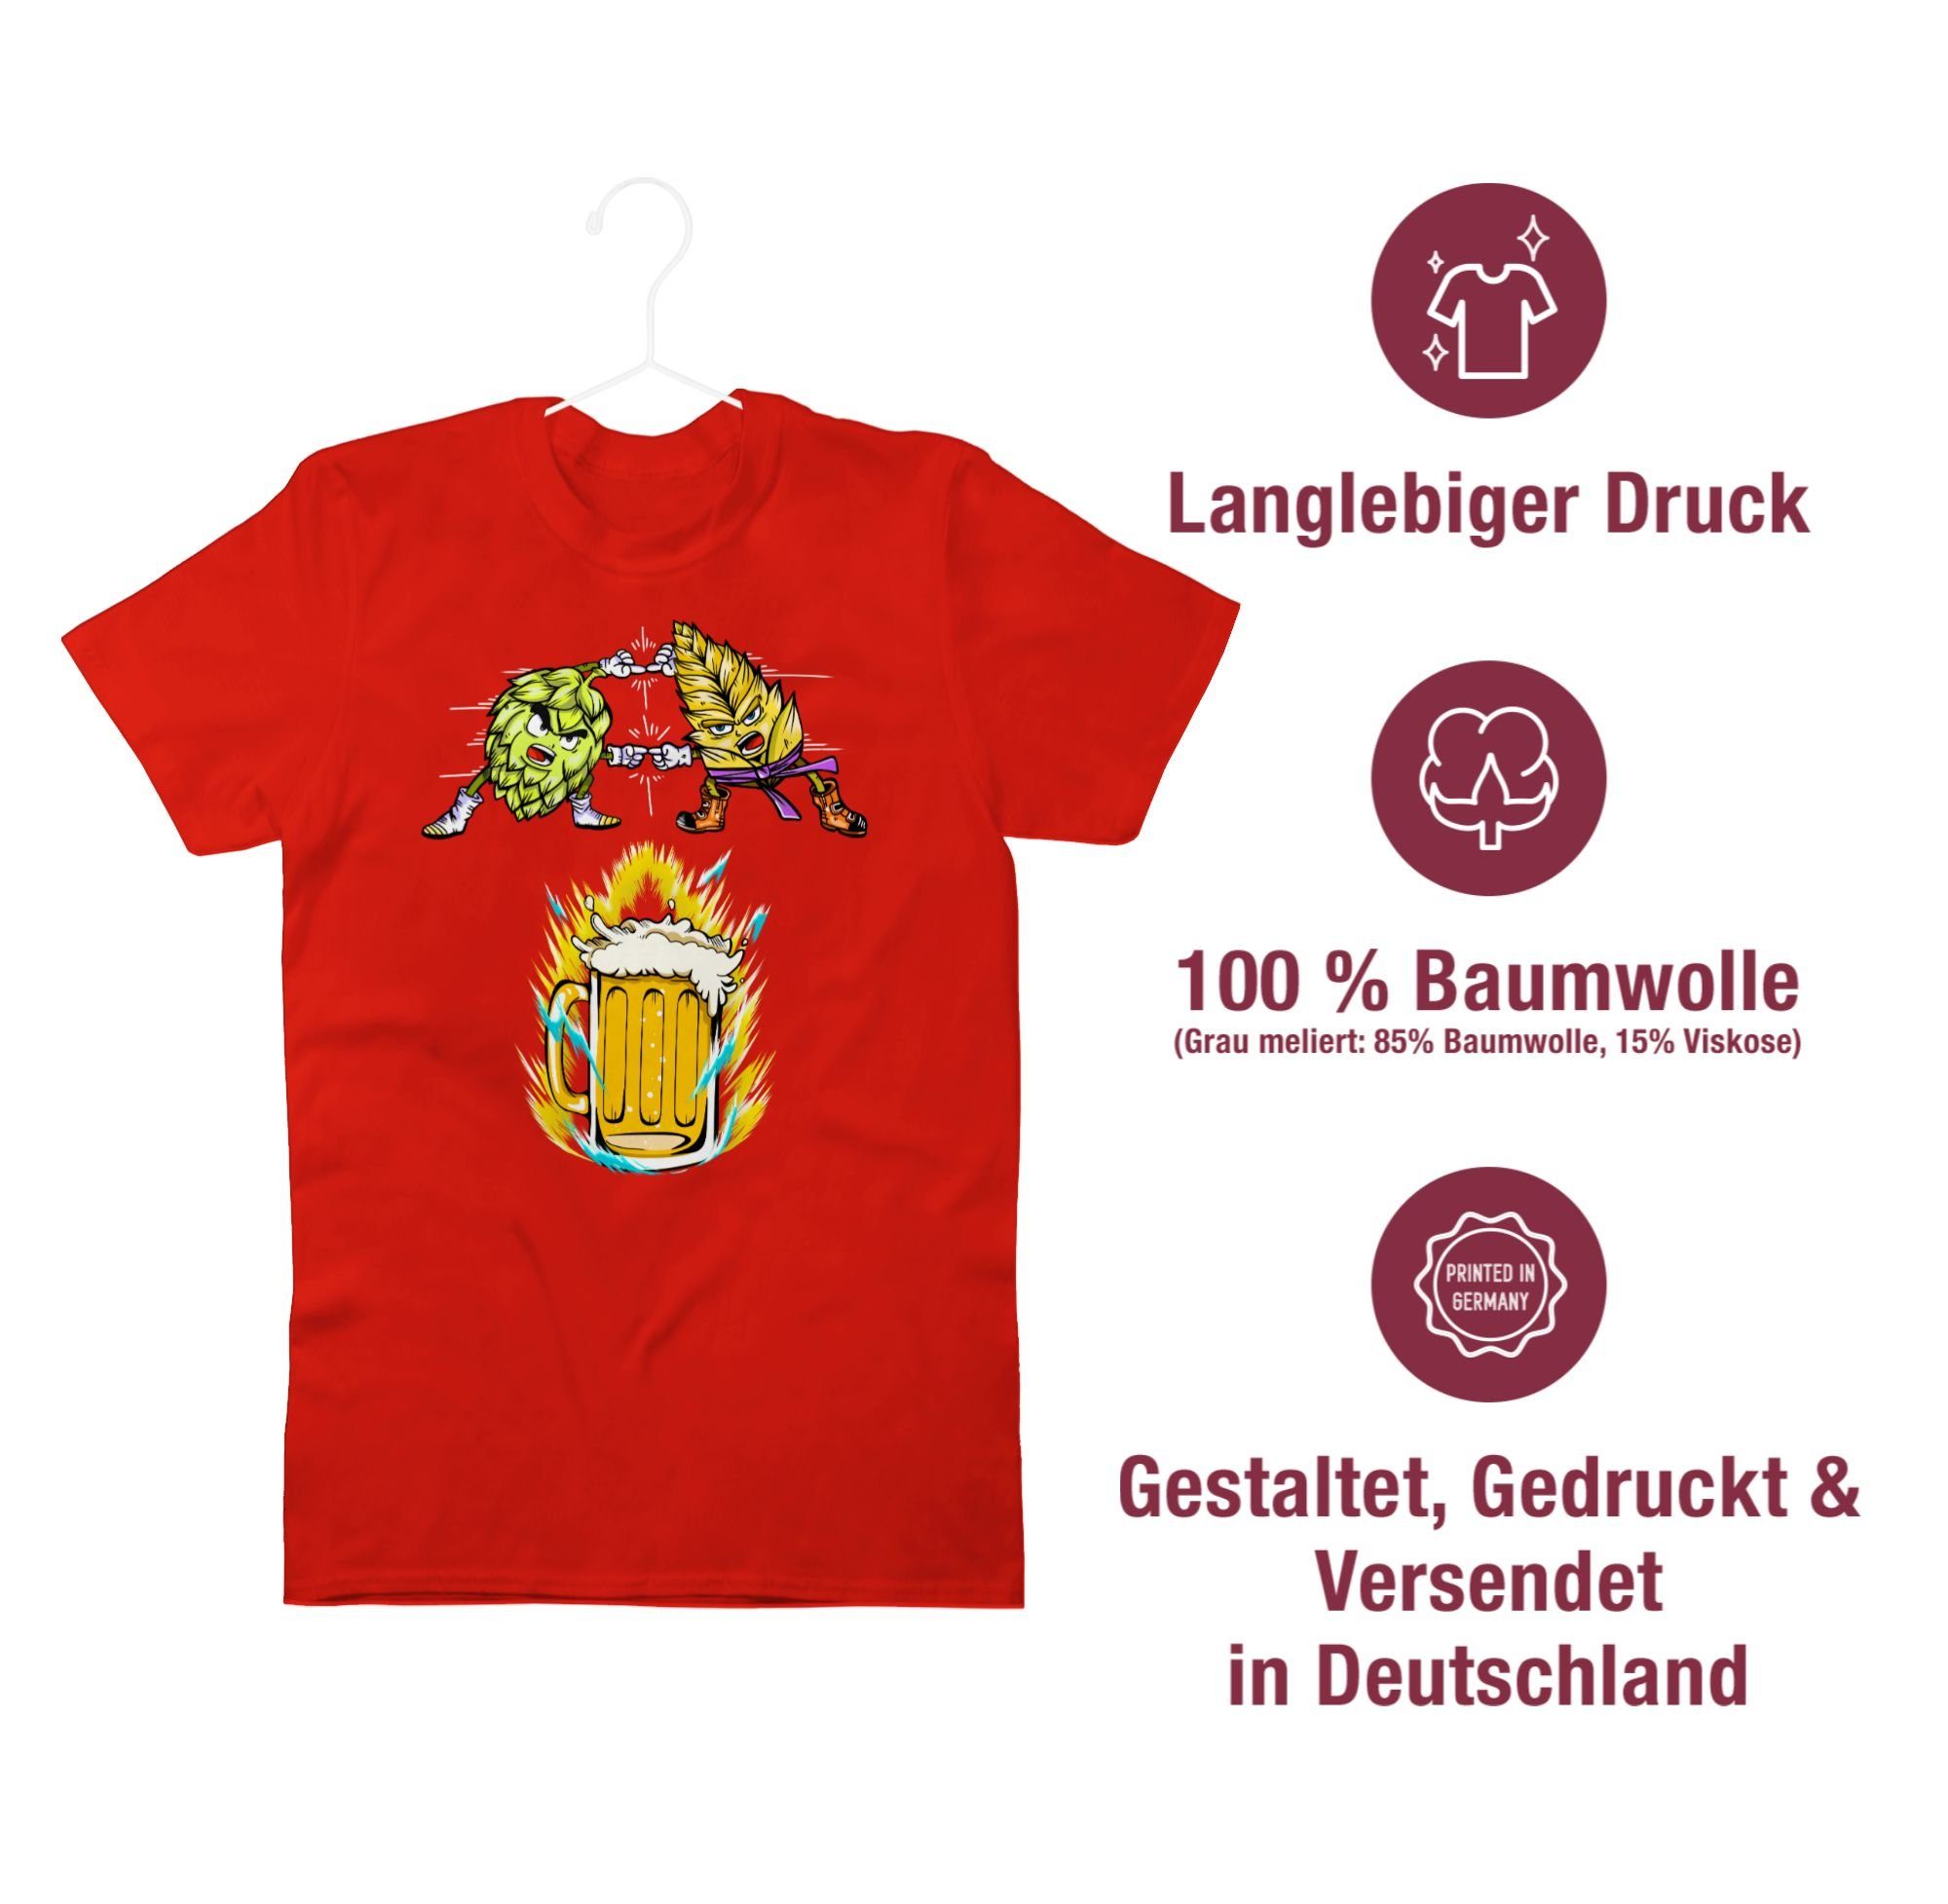 02 Shirtracer Fusion Malz T-Shirt - & Rot Bier Nerd Geschenke Hopfen